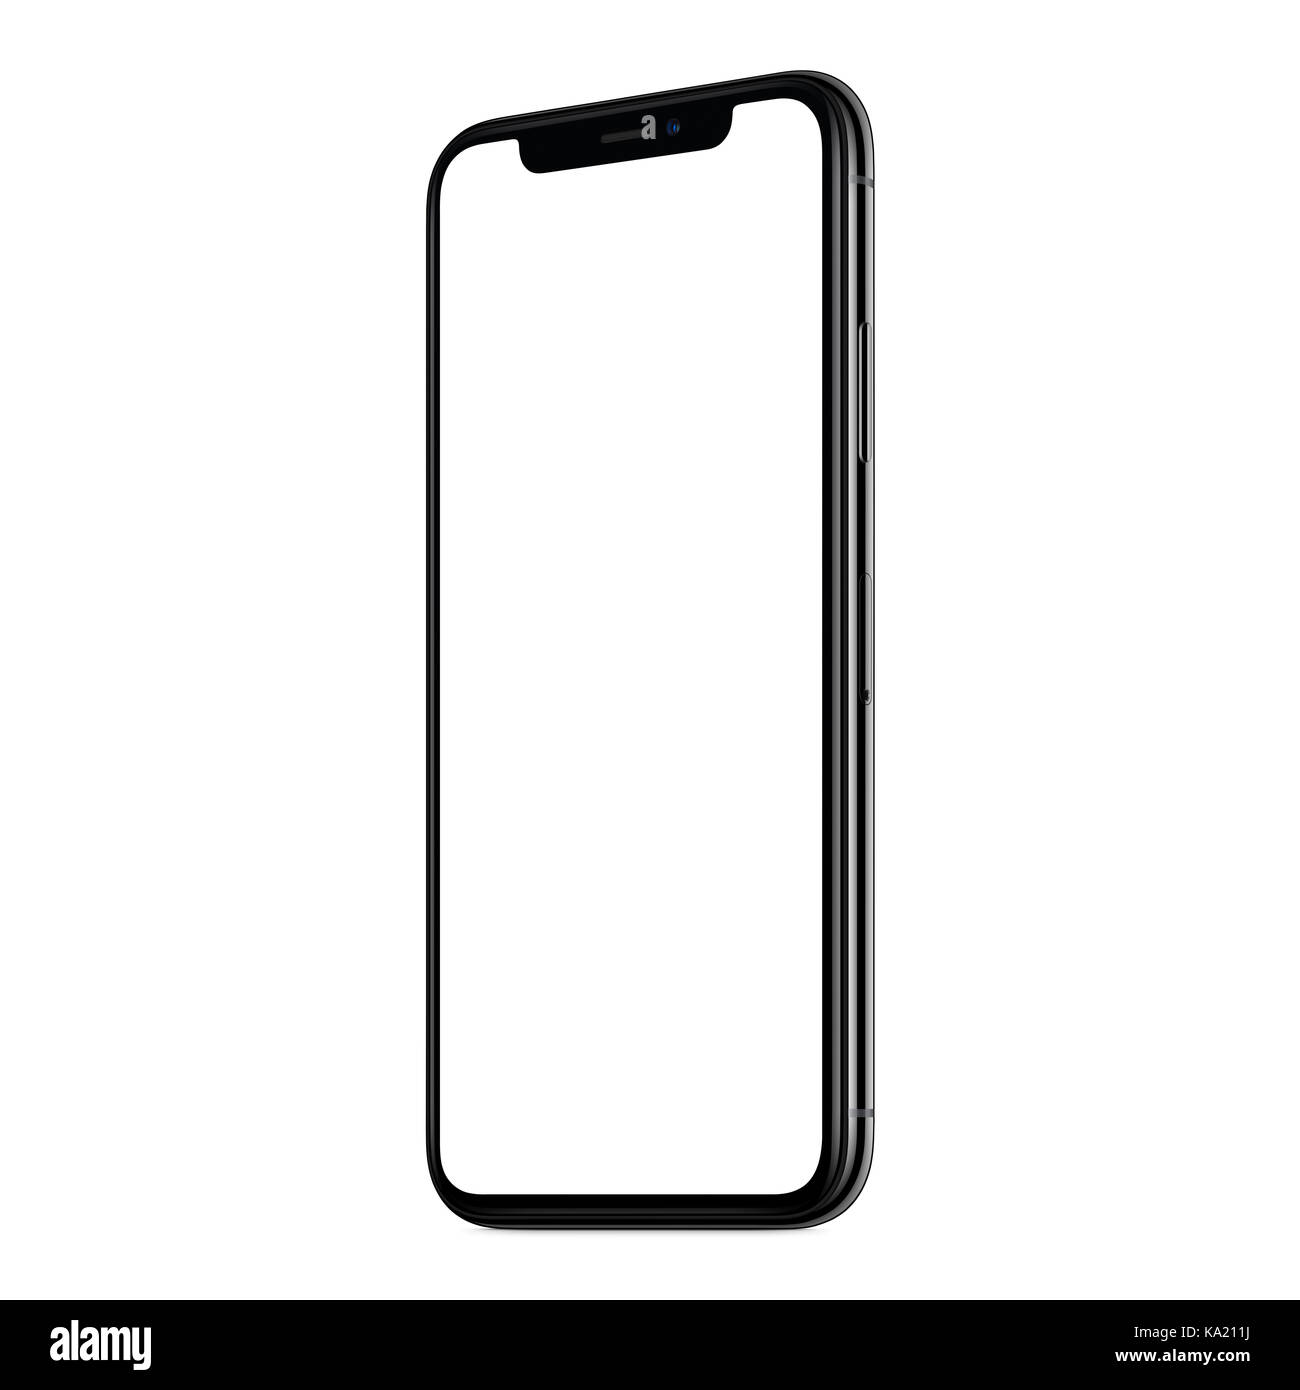 Với thiết kế không khung viền mới lạ, chiếc smartphone mockup with black frameless design của chúng tôi sẽ giúp cho hình ảnh sản phẩm của bạn trở lên hiện đại hơn. Đến với chúng tôi để trải nghiệm sản phẩm này ngay hôm nay.